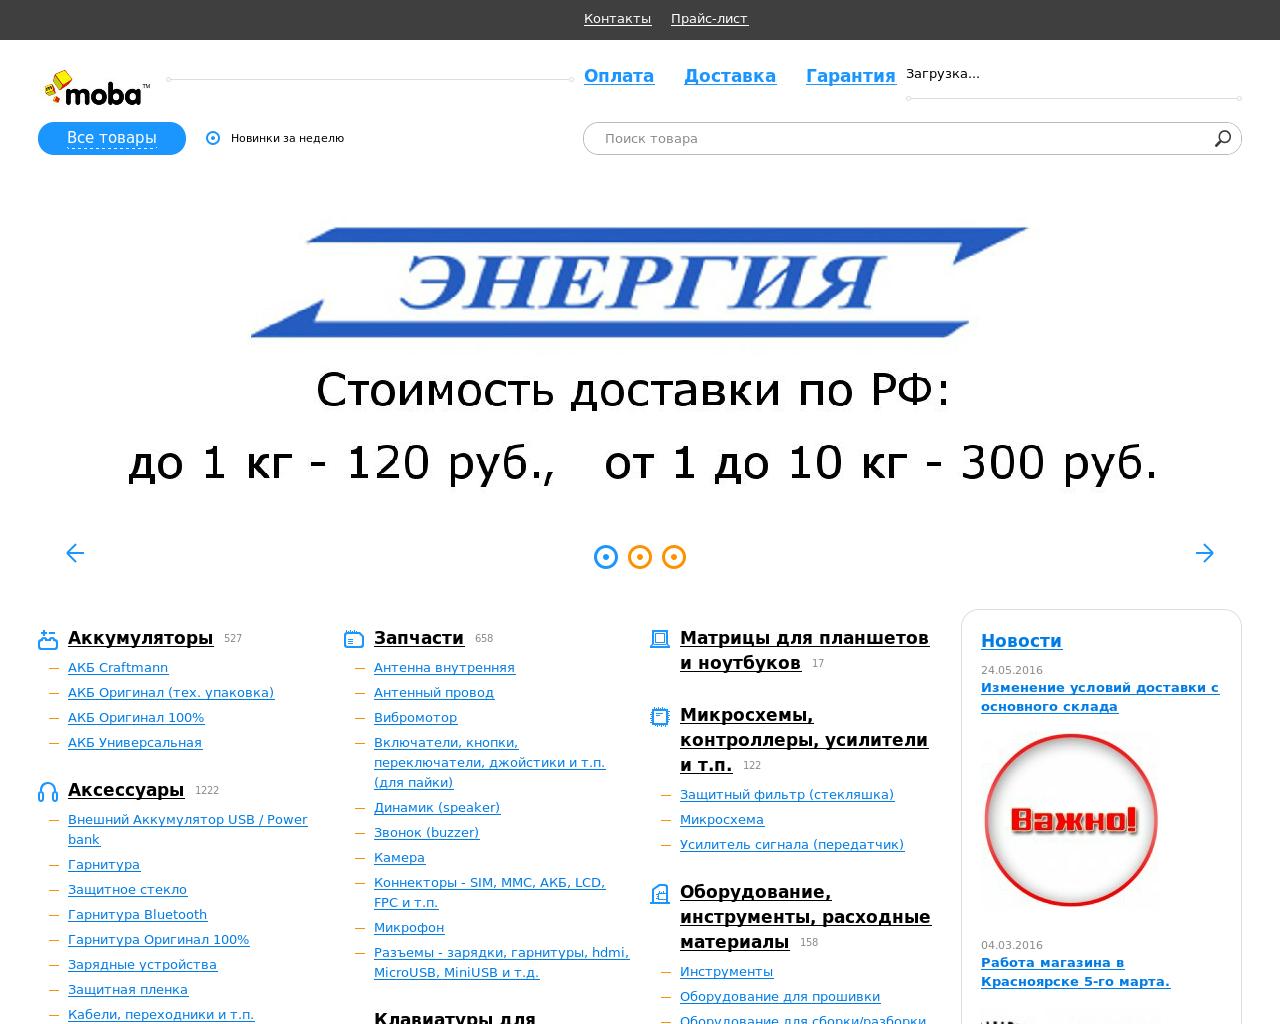 Изображение сайта moba.ru в разрешении 1280x1024